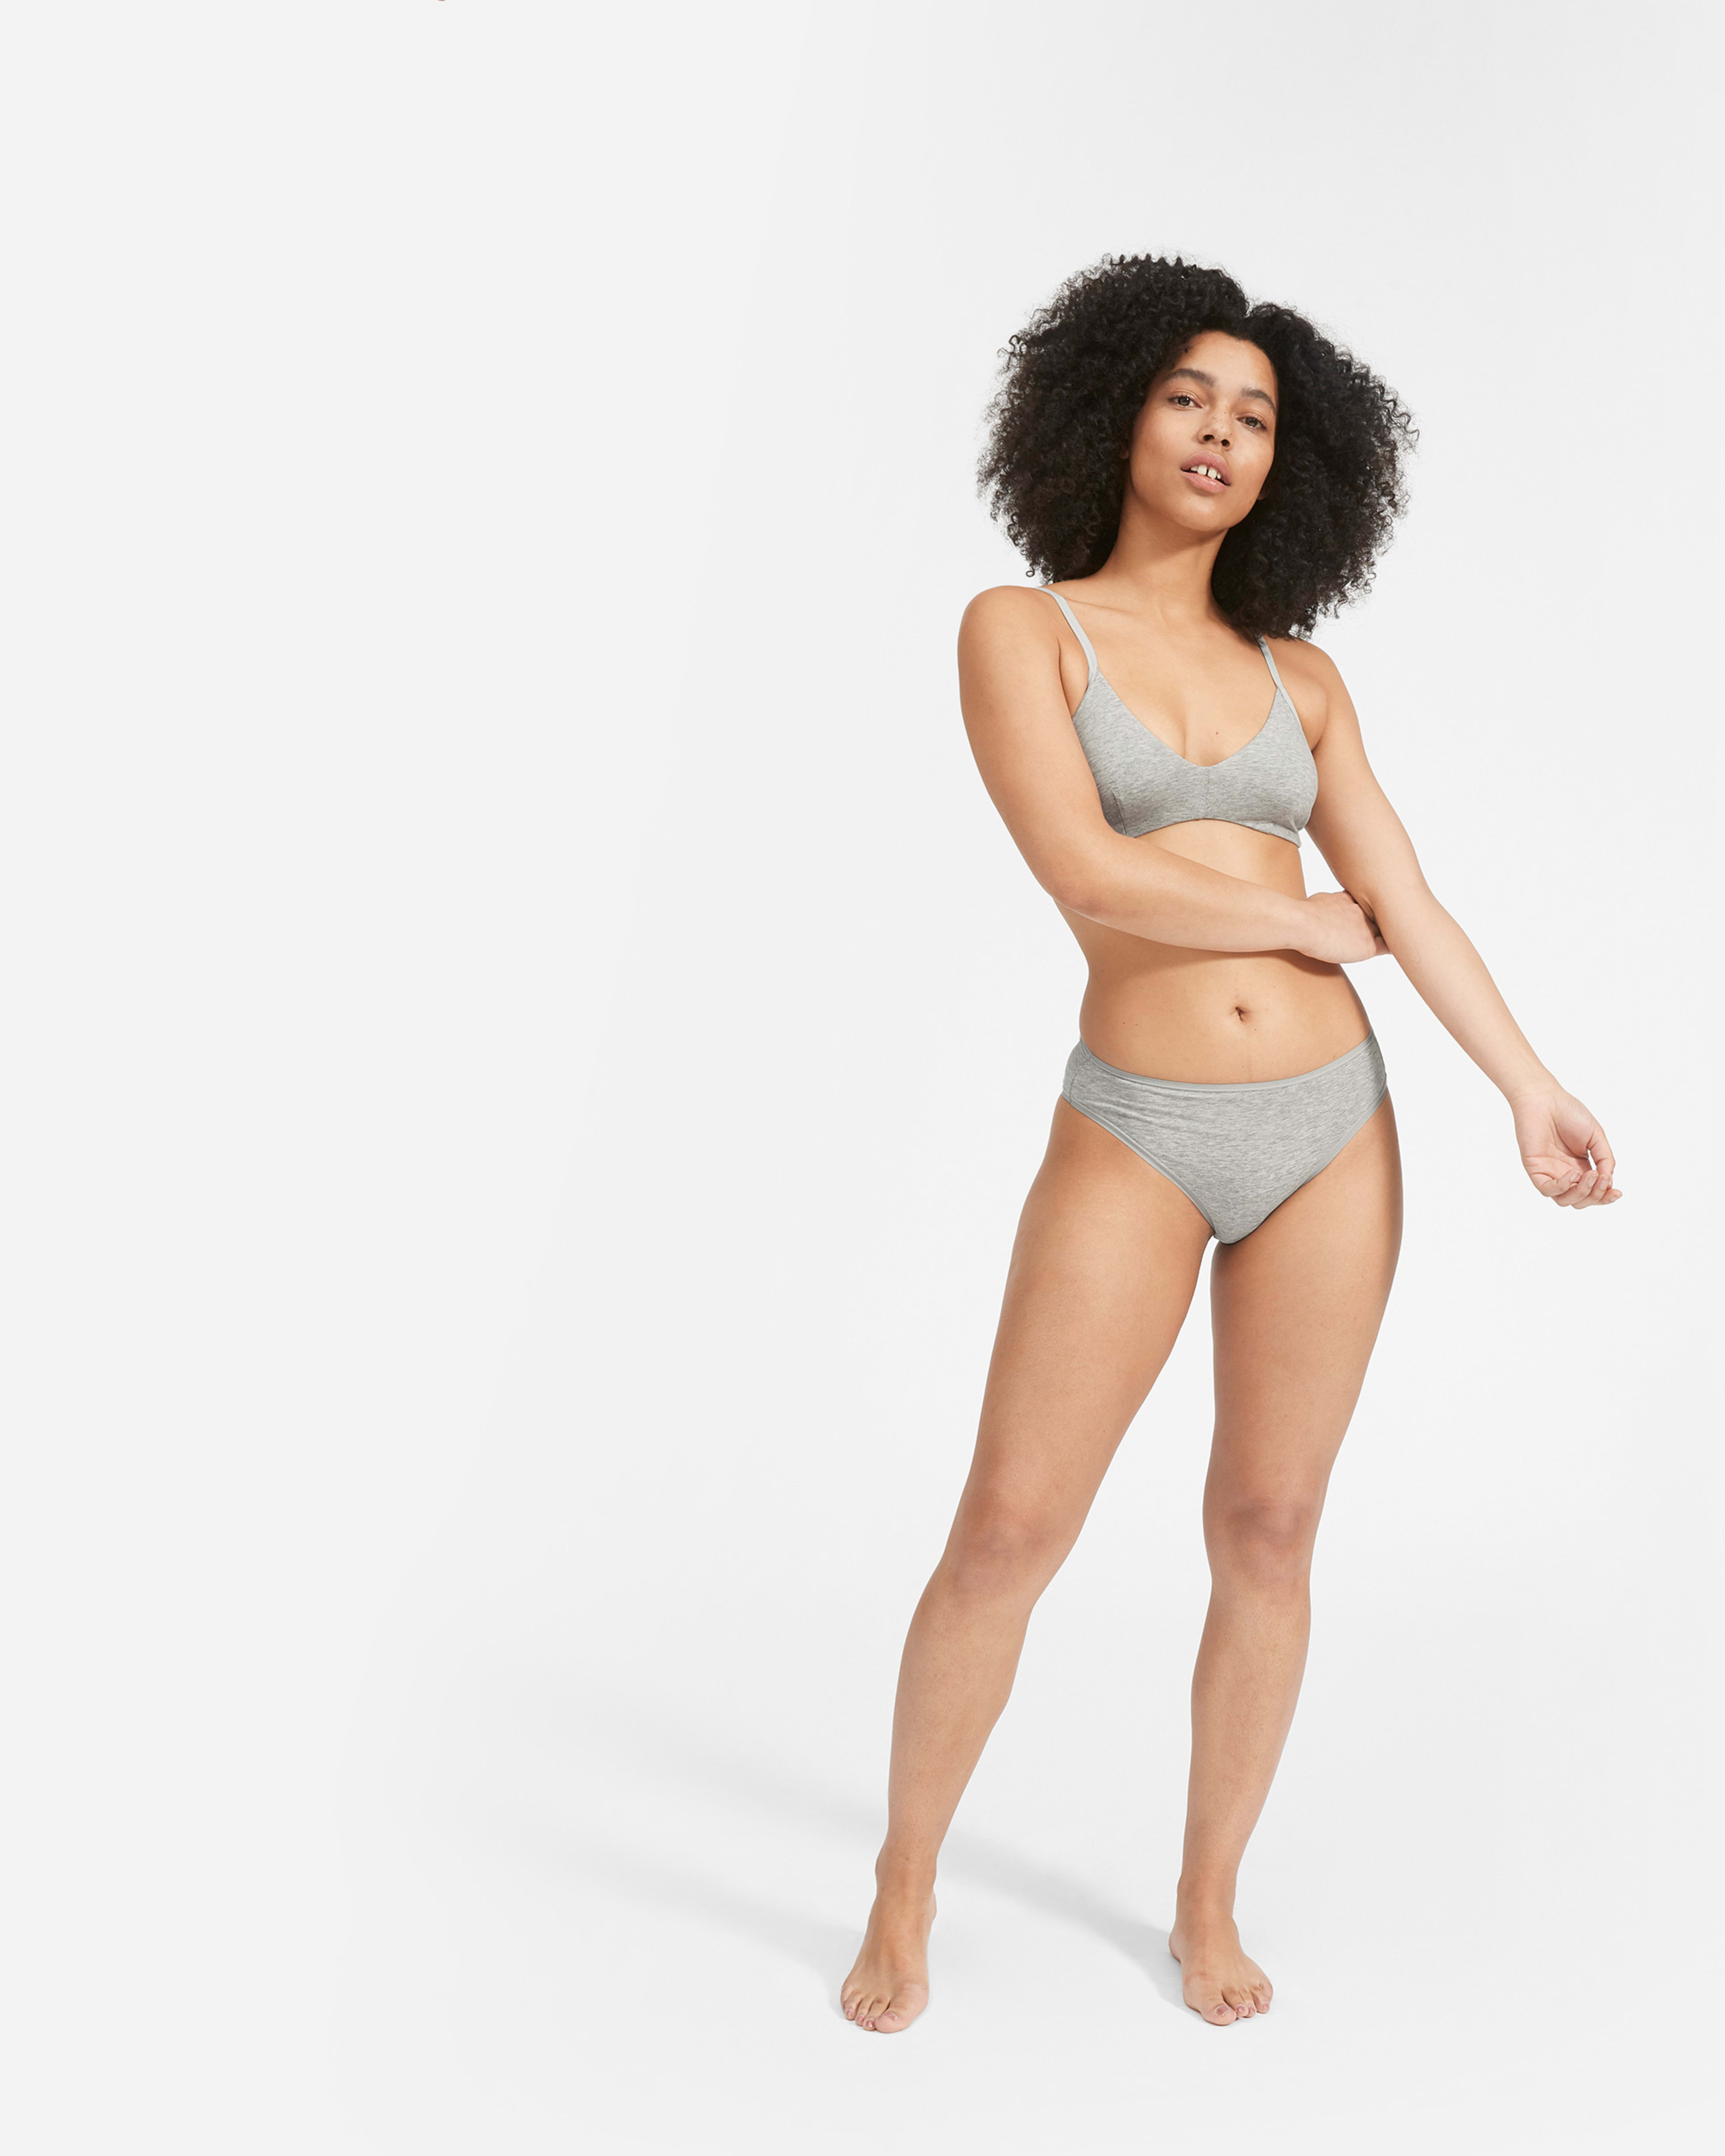 Testing Everlane Underwear: A Bra & Bralette Review